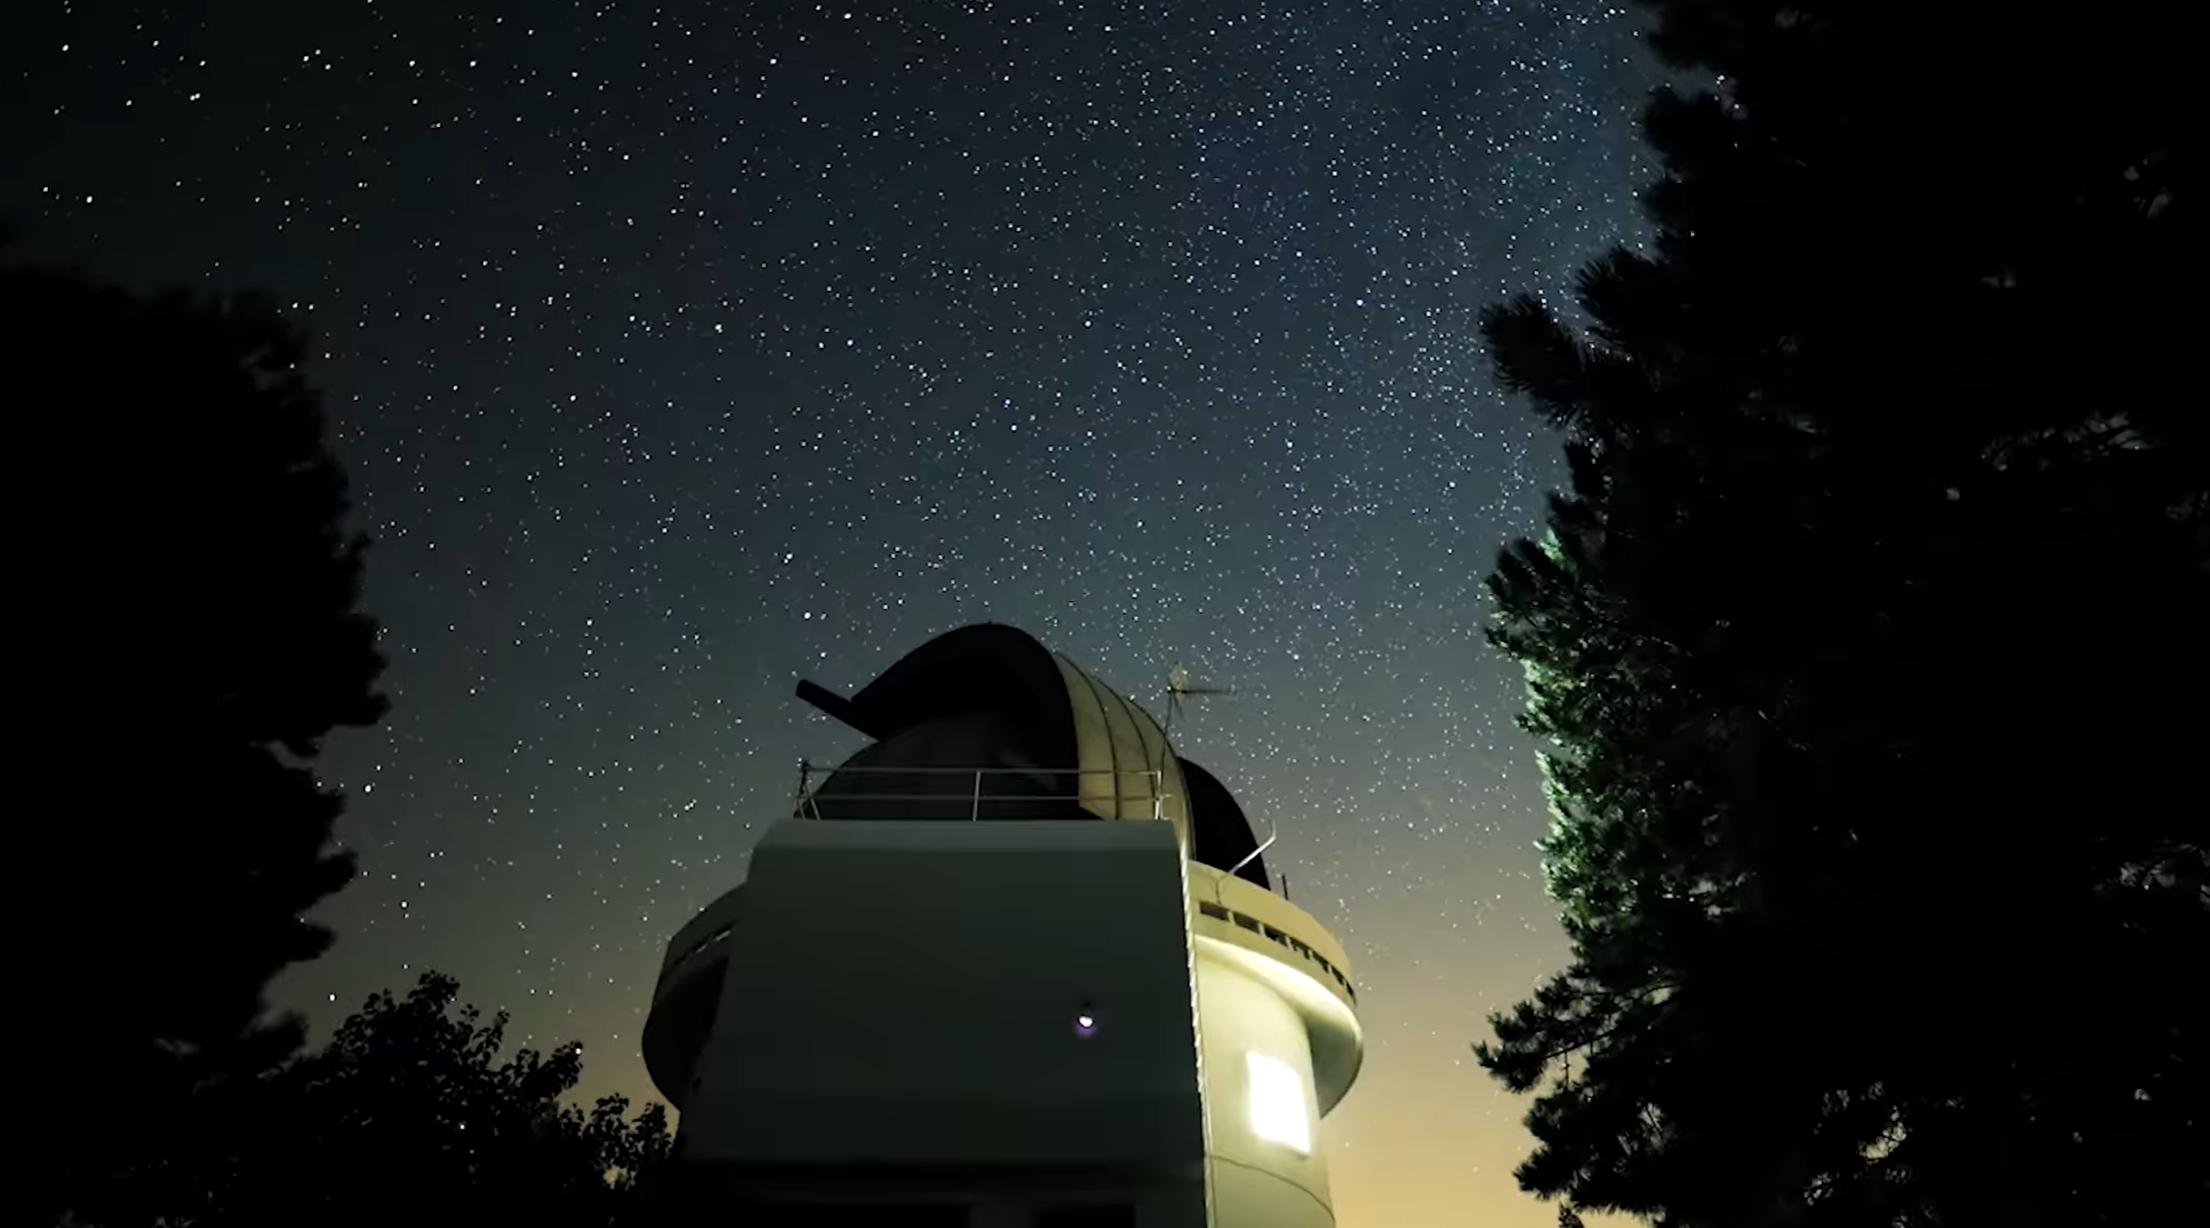 Σημαντική επιτυχία για το τηλεσκόπιο Κρυονερίου στην Κορινθία (Βίντεο)